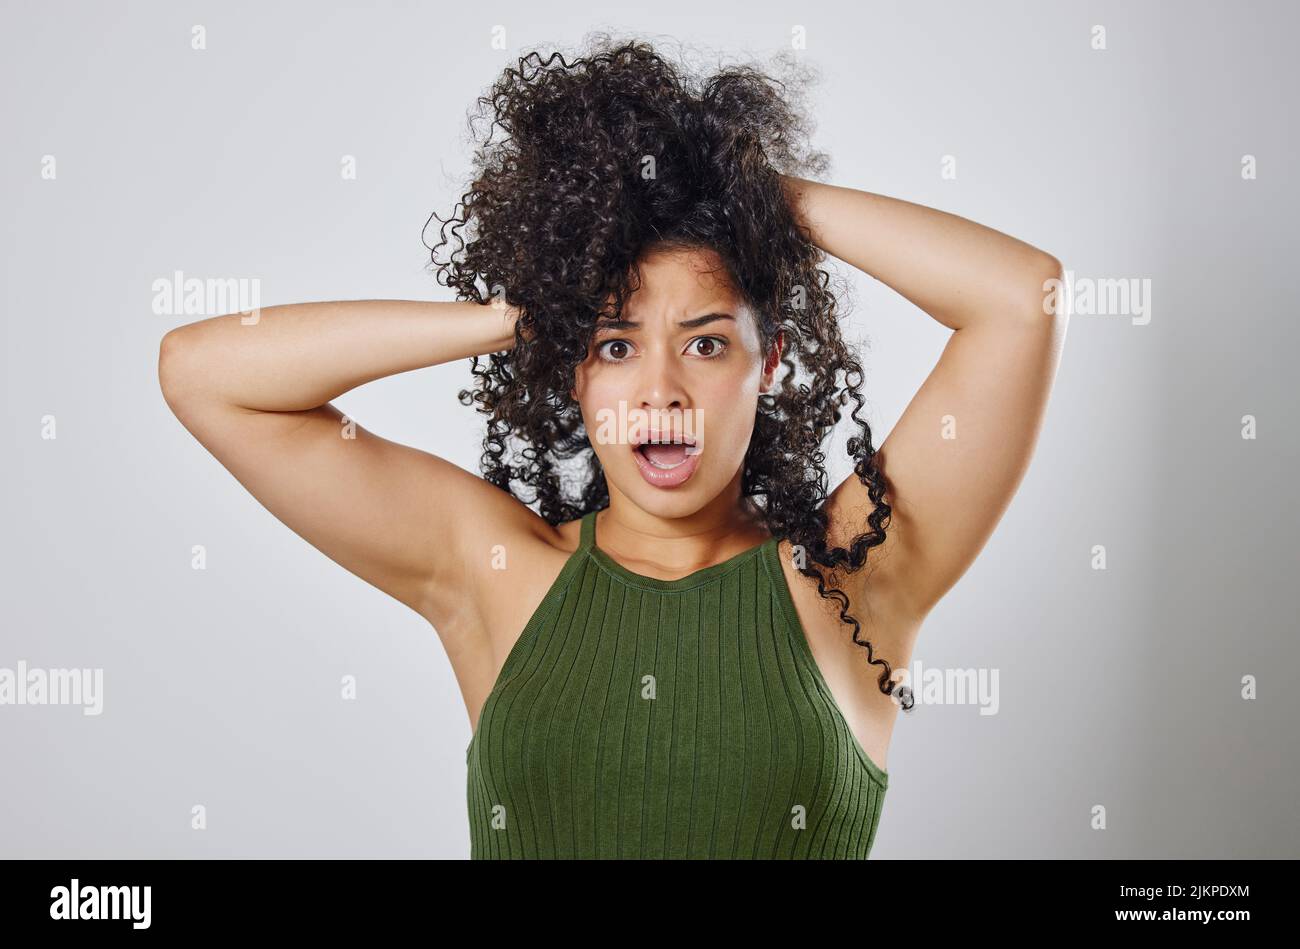 Was hast du gerade über meine Haare gesagt? Studioaufnahme einer Frau mit unordentlichen Haaren, die vor einem grauen Hintergrund posiert. Stockfoto